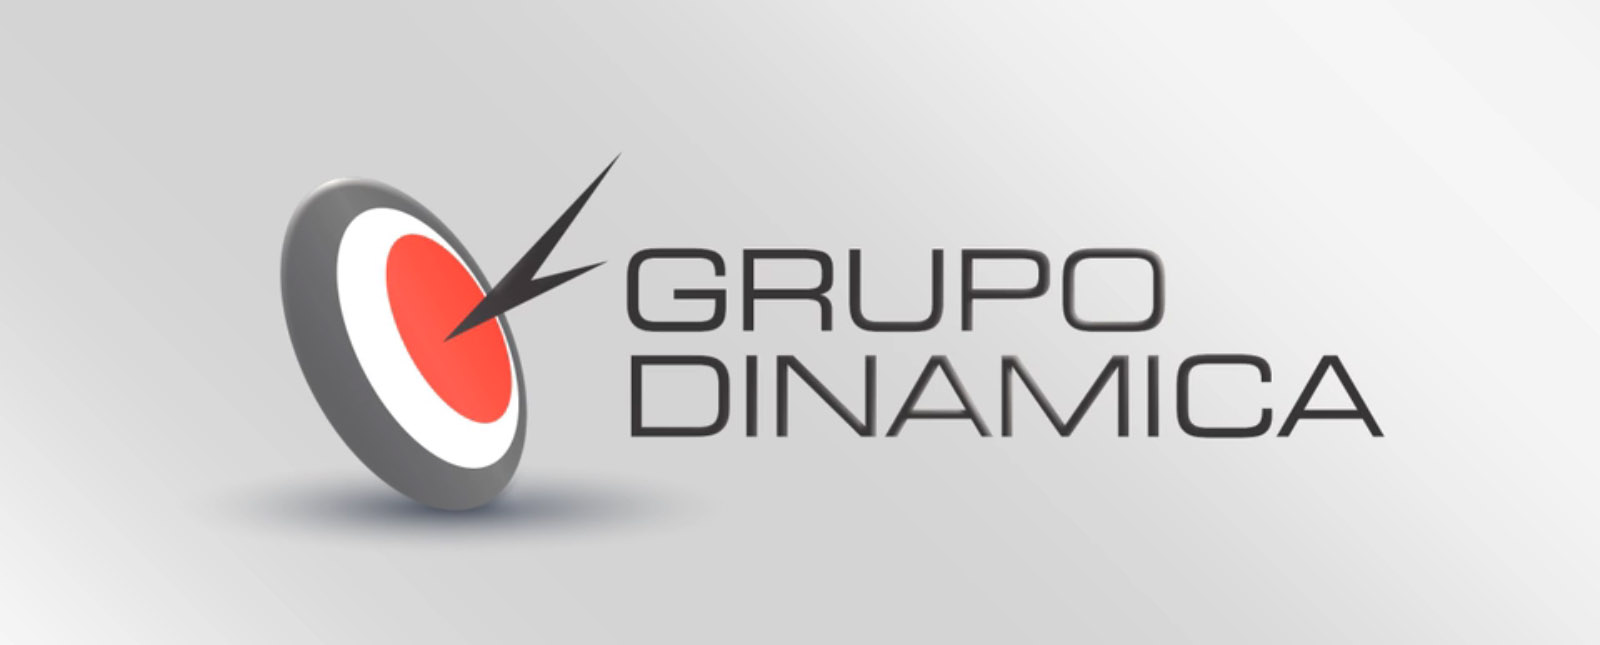 Grupo Dinámica y un explosivo re-branding